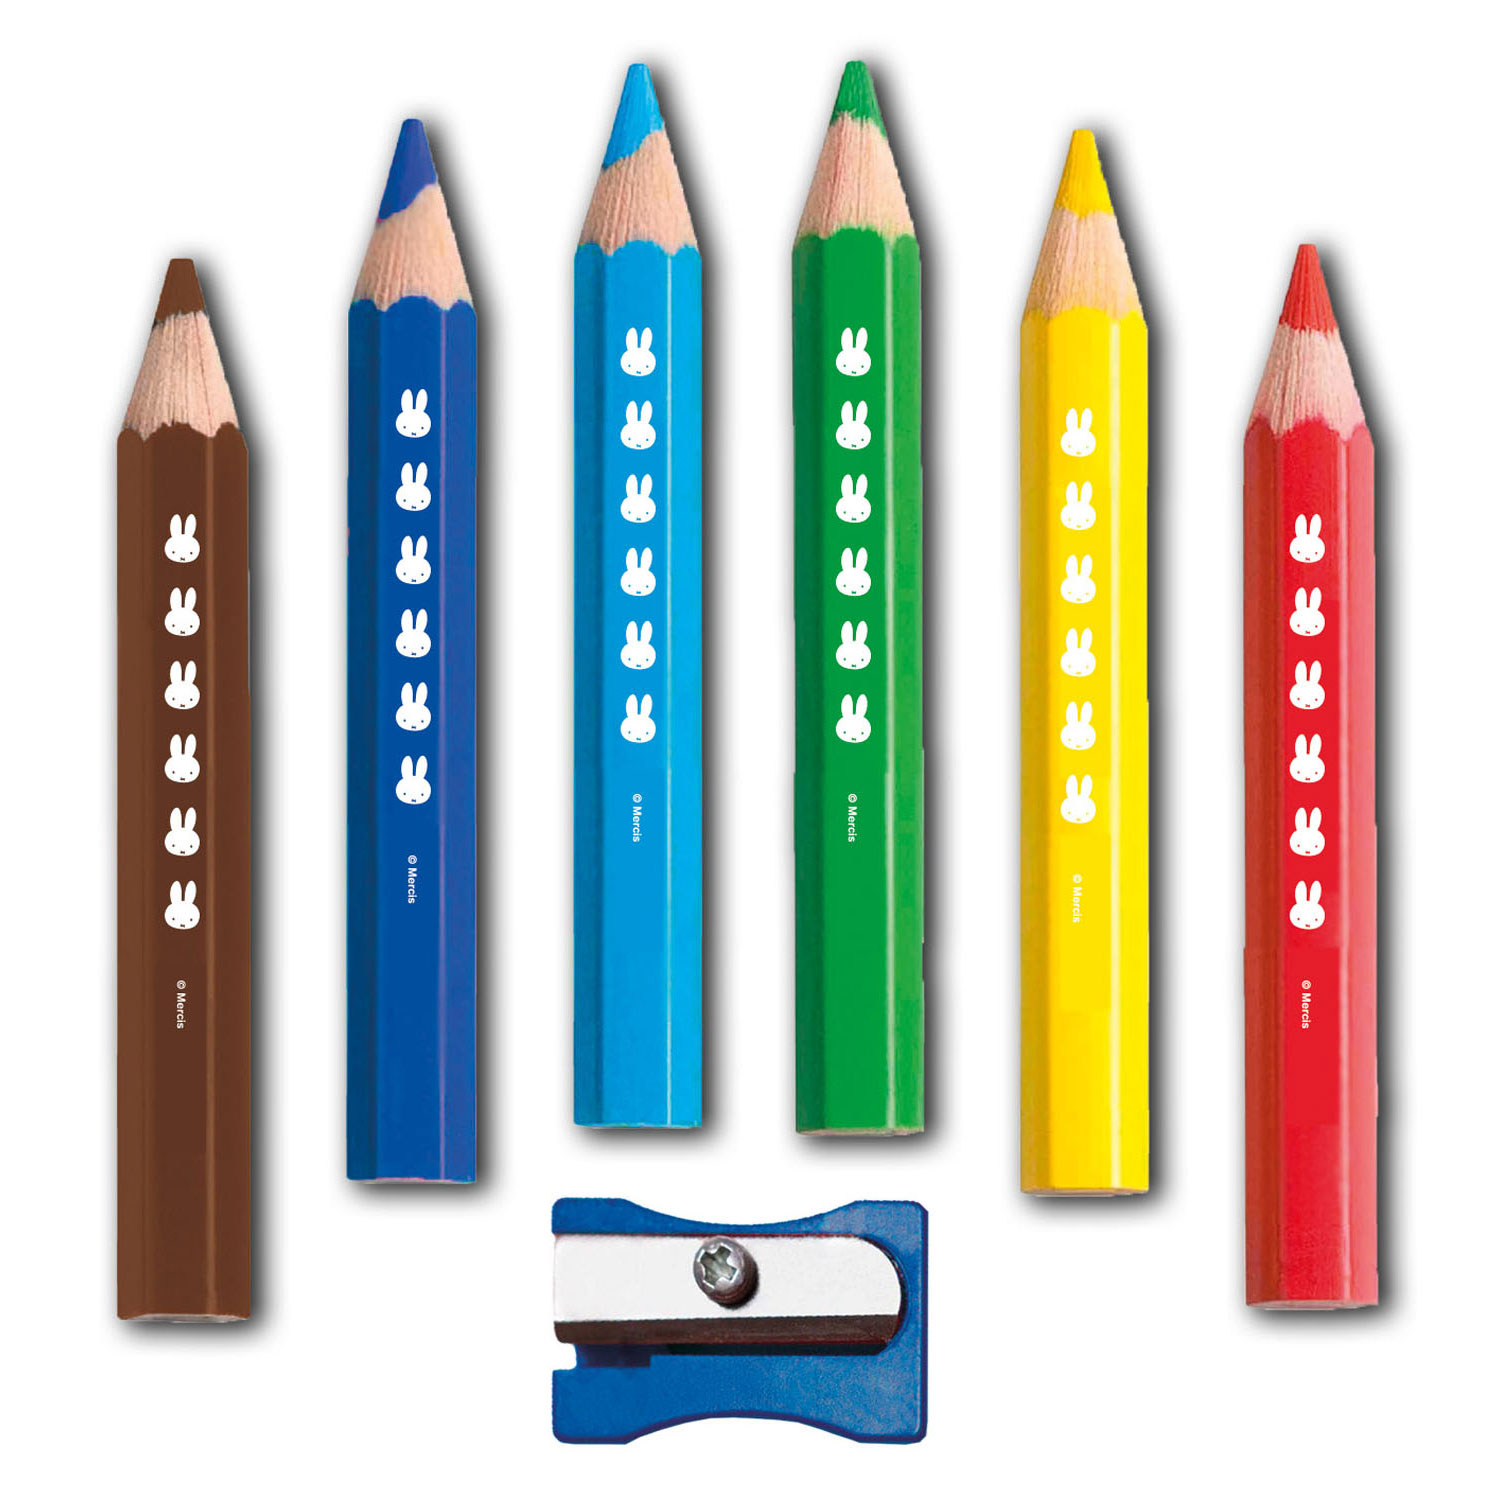 Crayons en bois Miffy , 6 pièces.